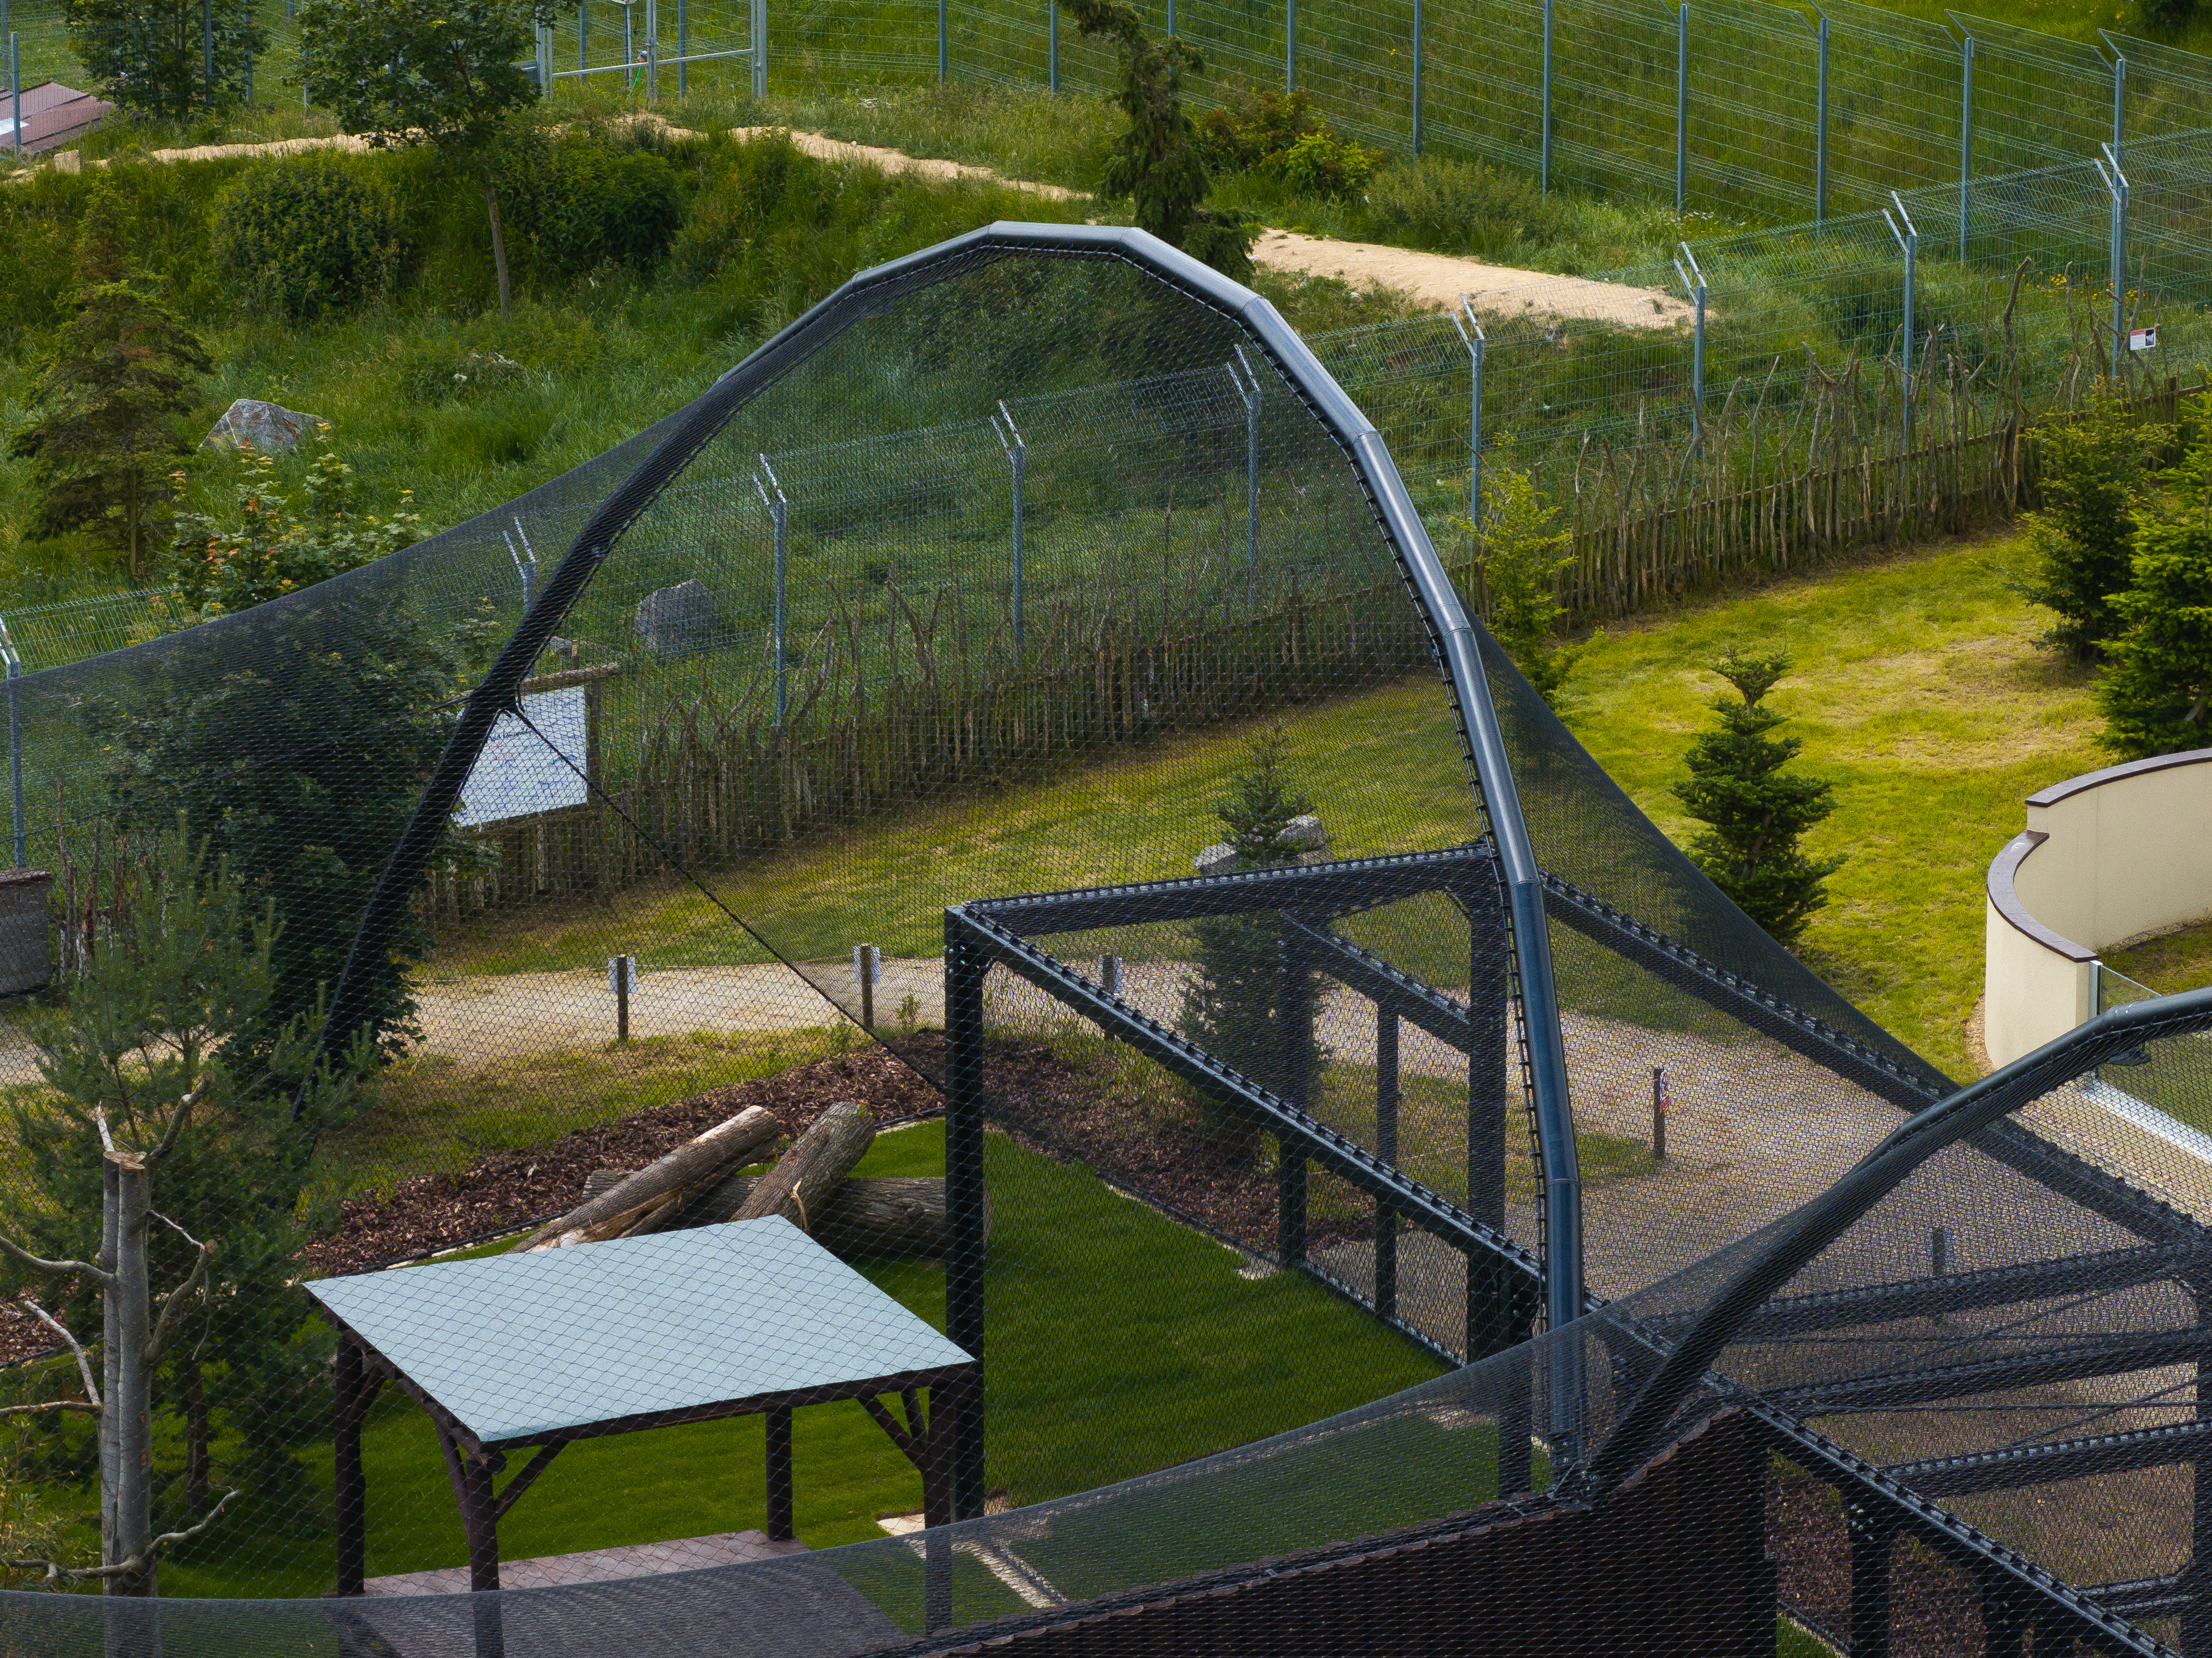 Estrutura do pavilhão do centro de salvamento CITES no jardim zoológico de Praga | Detalhe do revestimento com malha de aço inoxidável